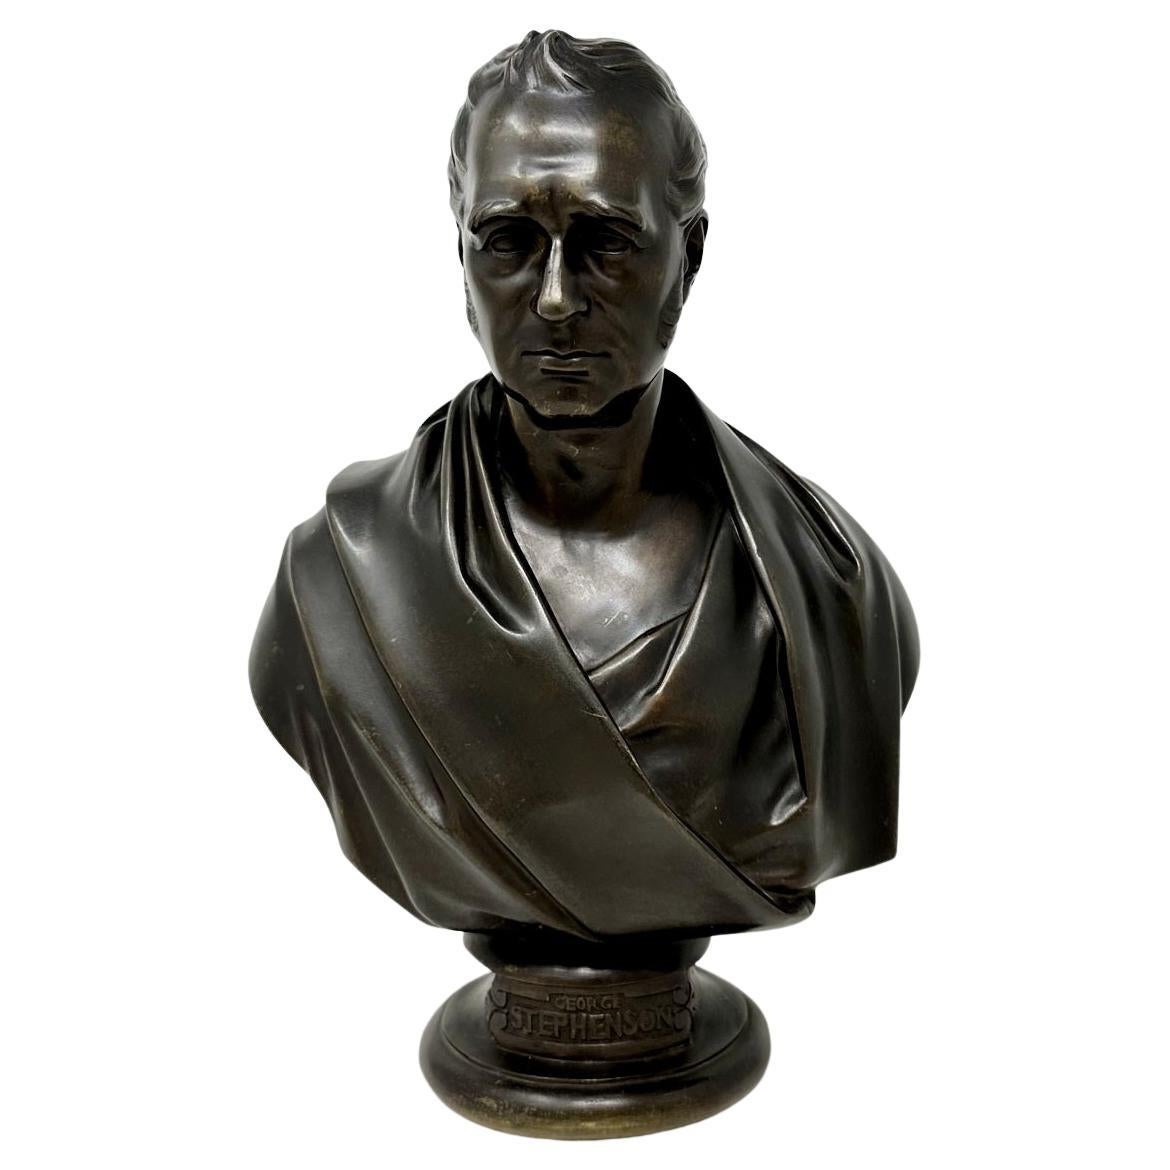 Antique Male Bronze Bust George Stephenson Railways Interest Edward William Wyon